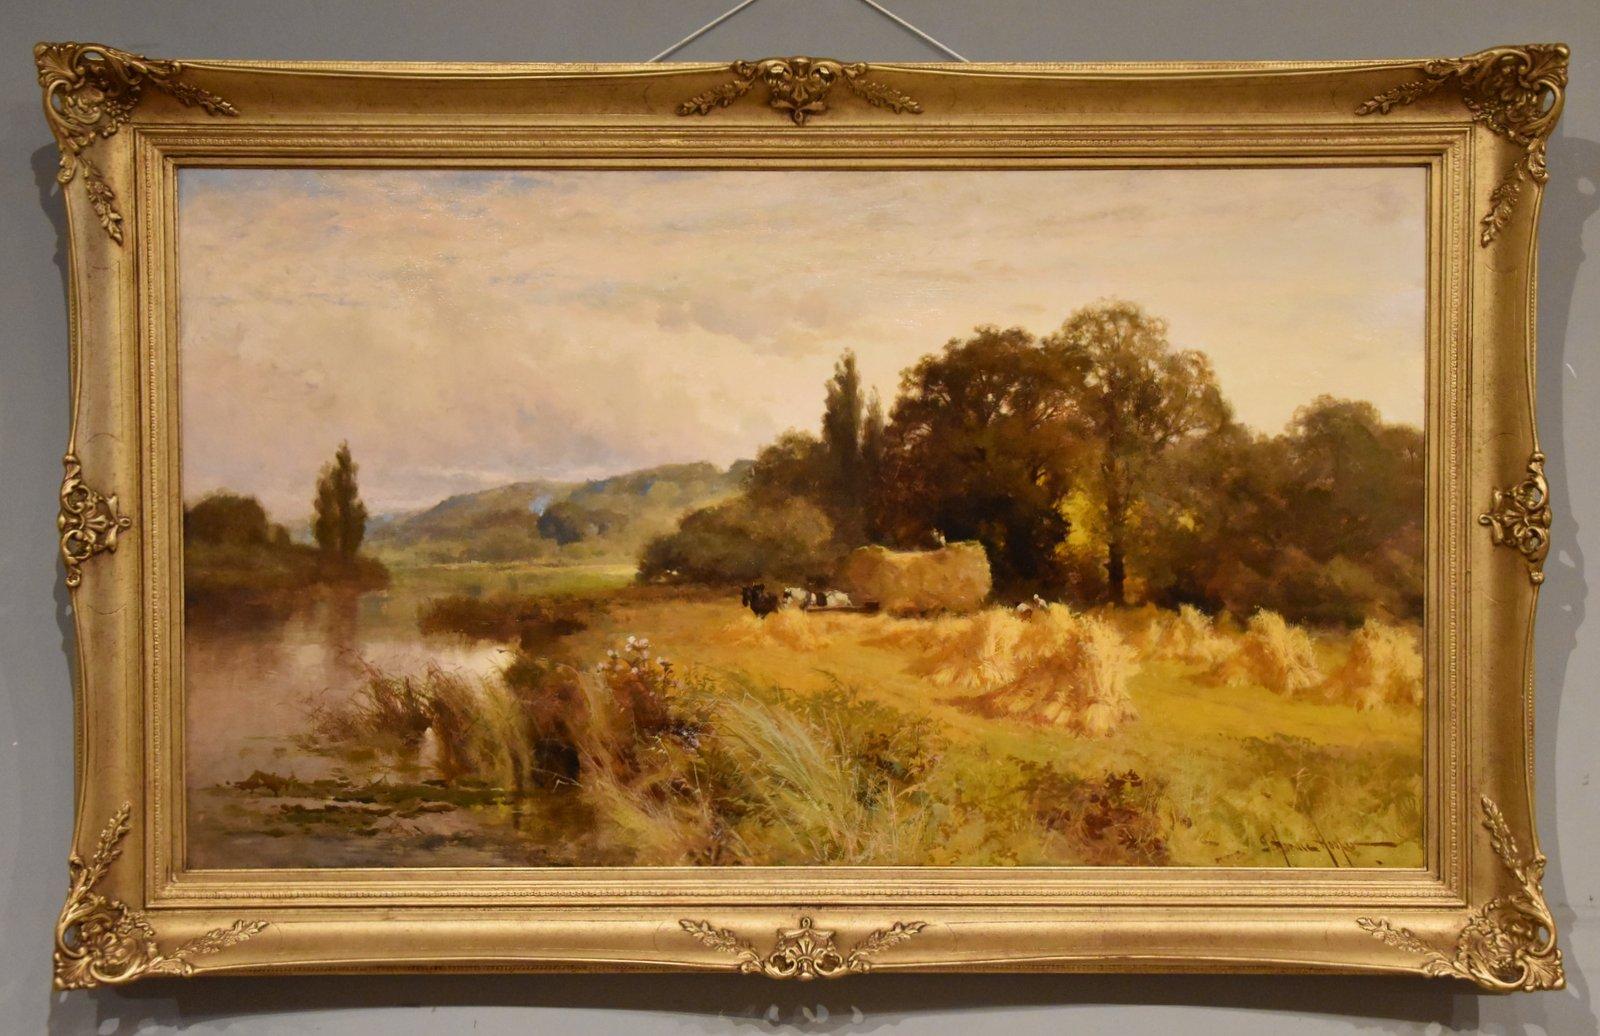 Peinture à l'huile de John Horace Hooper "Harvest Time Near Henley" 1851 - 1906 Londres Peintre de paysages atmosphériques de l'Angleterre rurale. Exposé à la Royal Academy de Liverpool et à la Royal Hibernian Academy de Dublin. Huile sur toile.